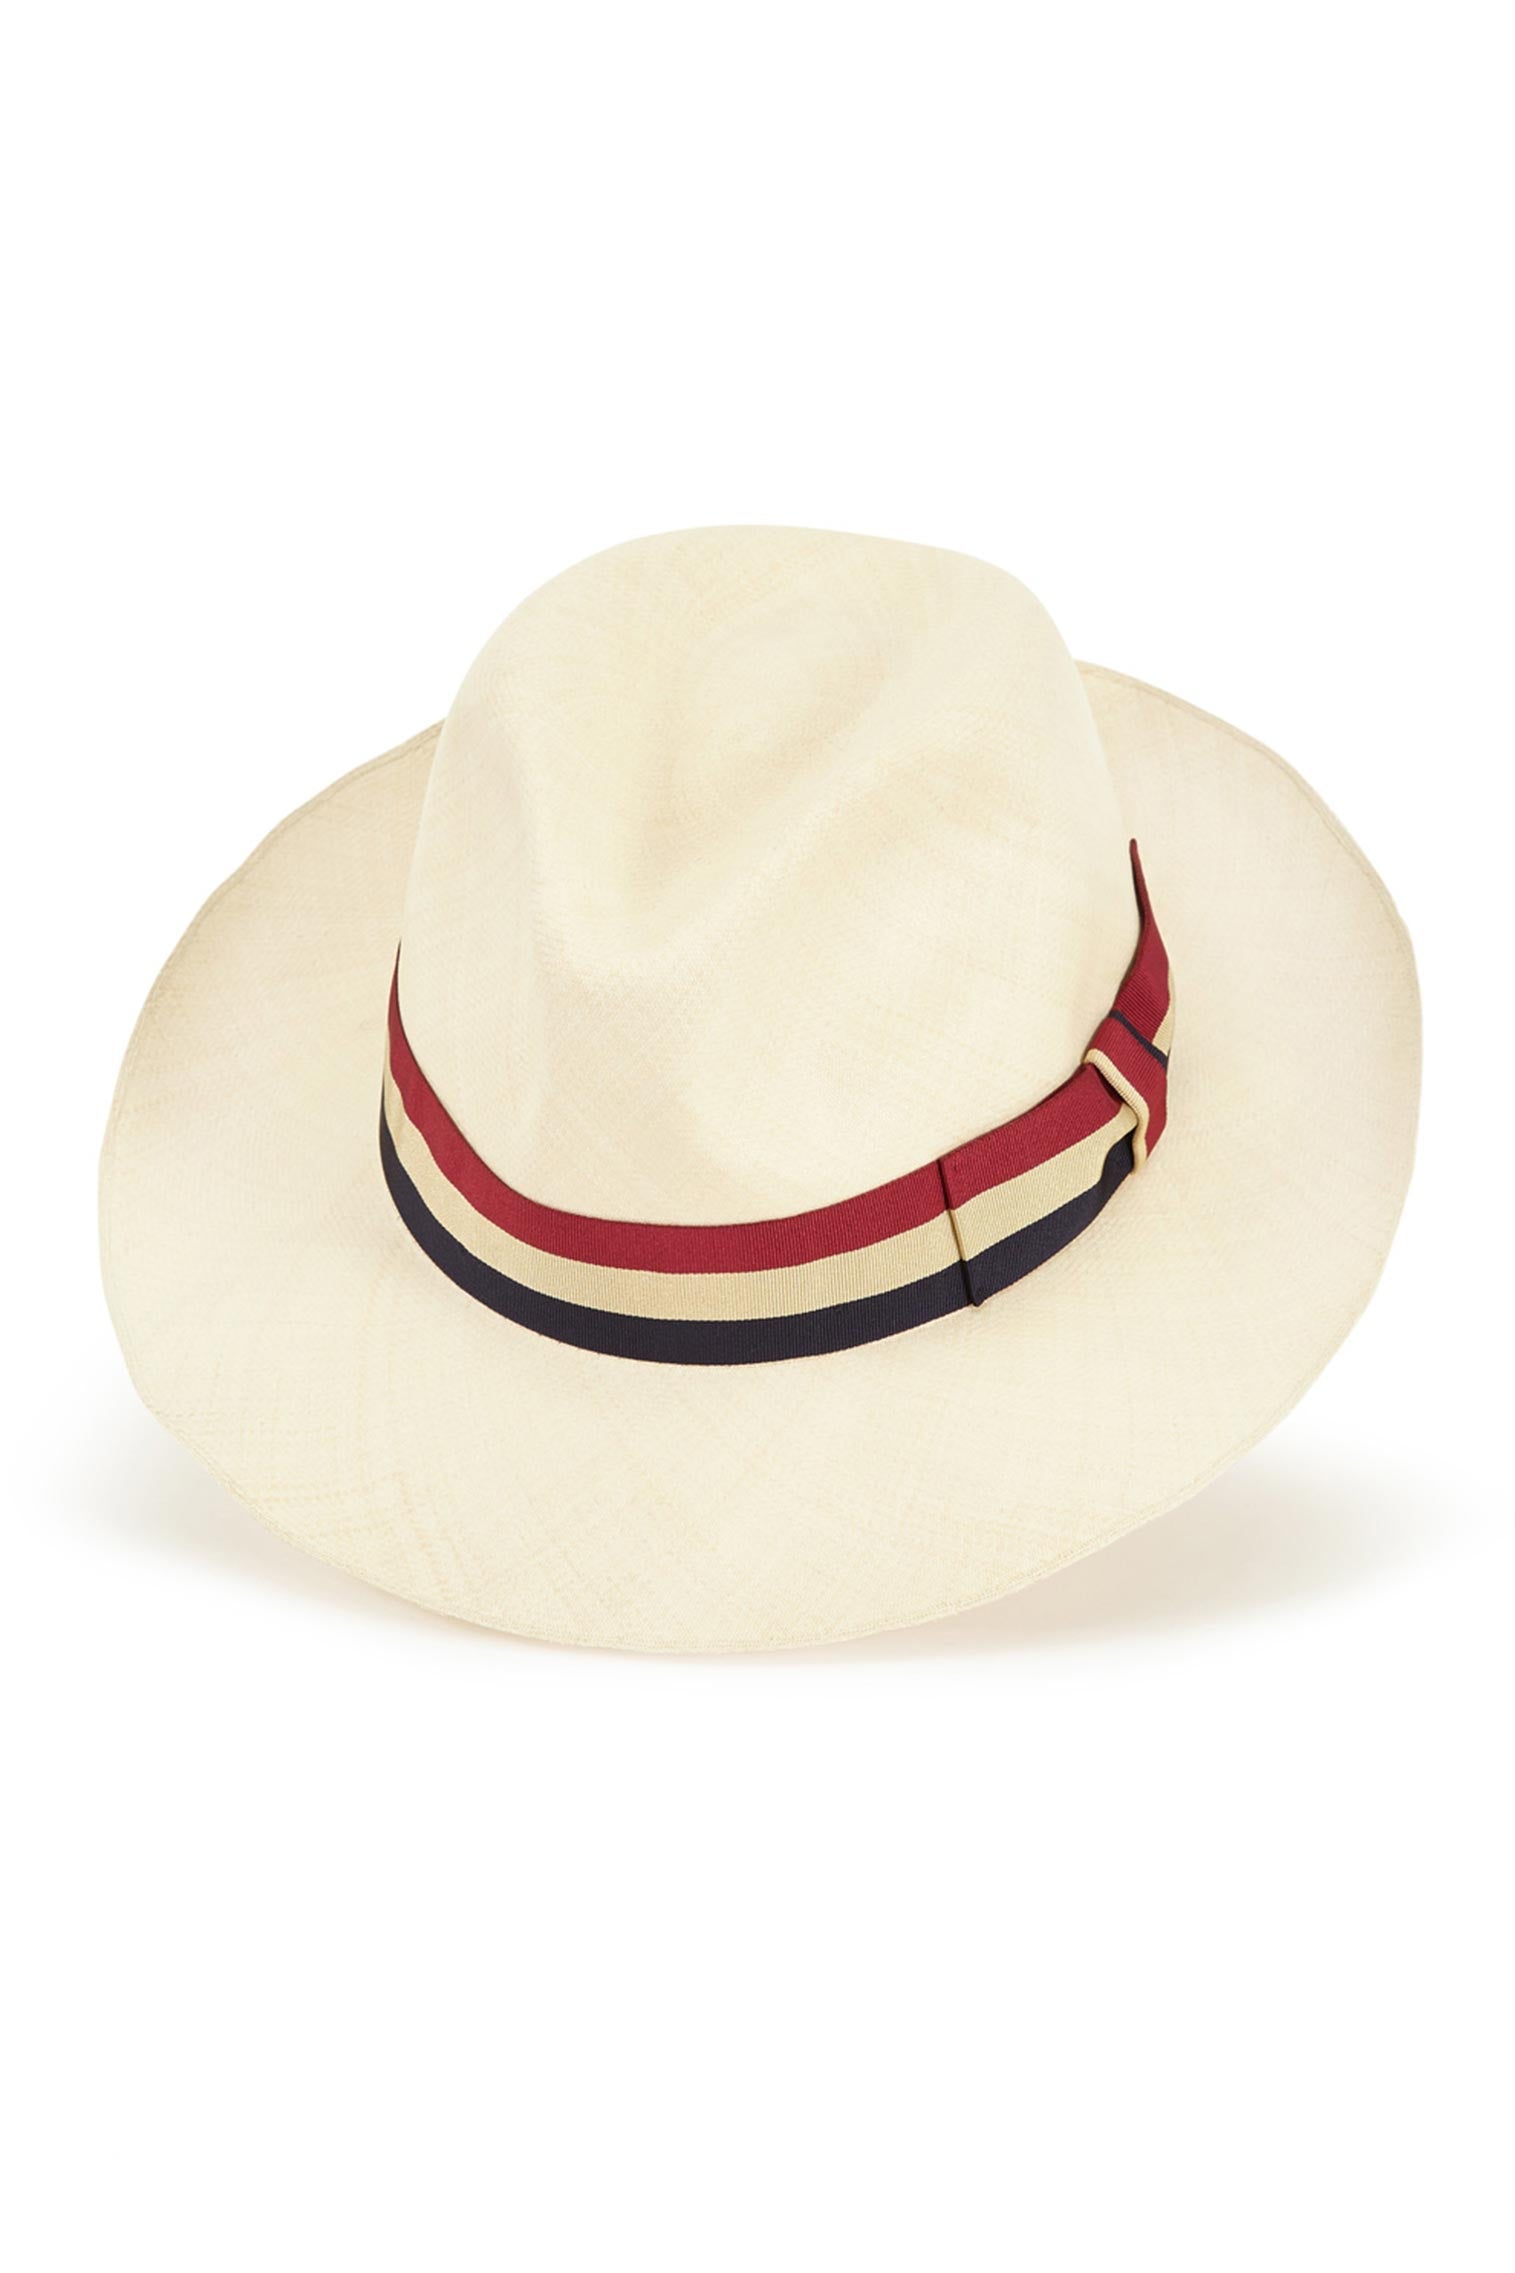 Bespoke Ultra-Fine Montecristi Panama - Men's Hats - Lock & Co. Hatters London UK